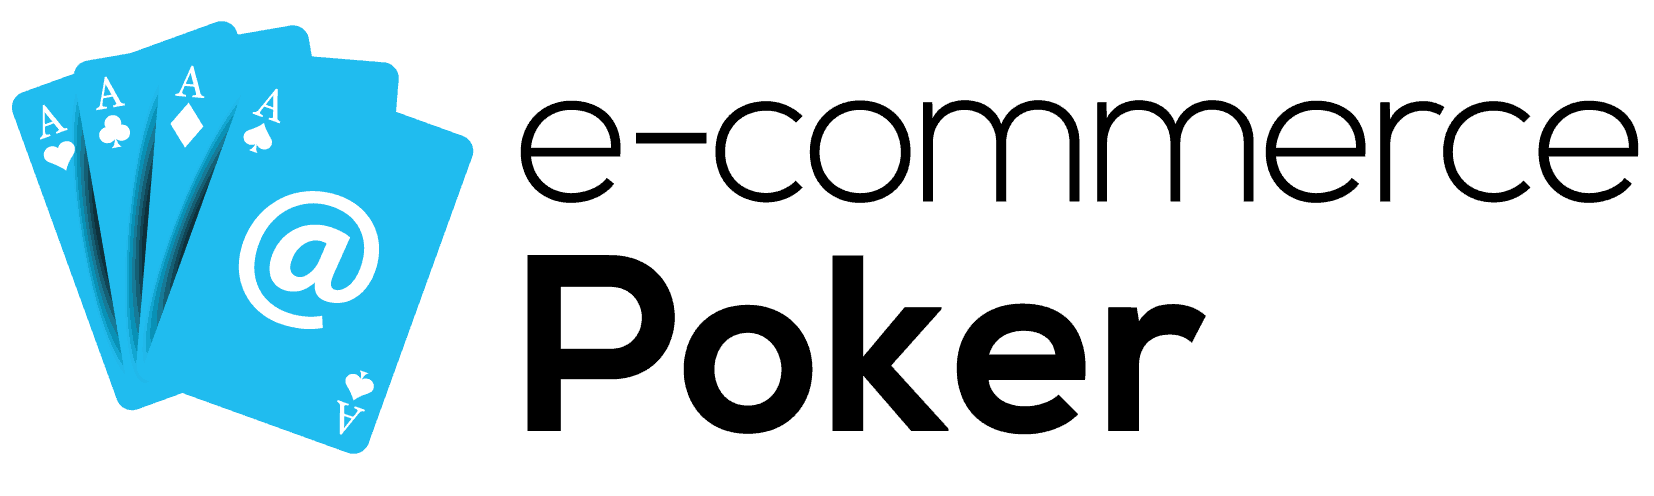 e-commerce-poker